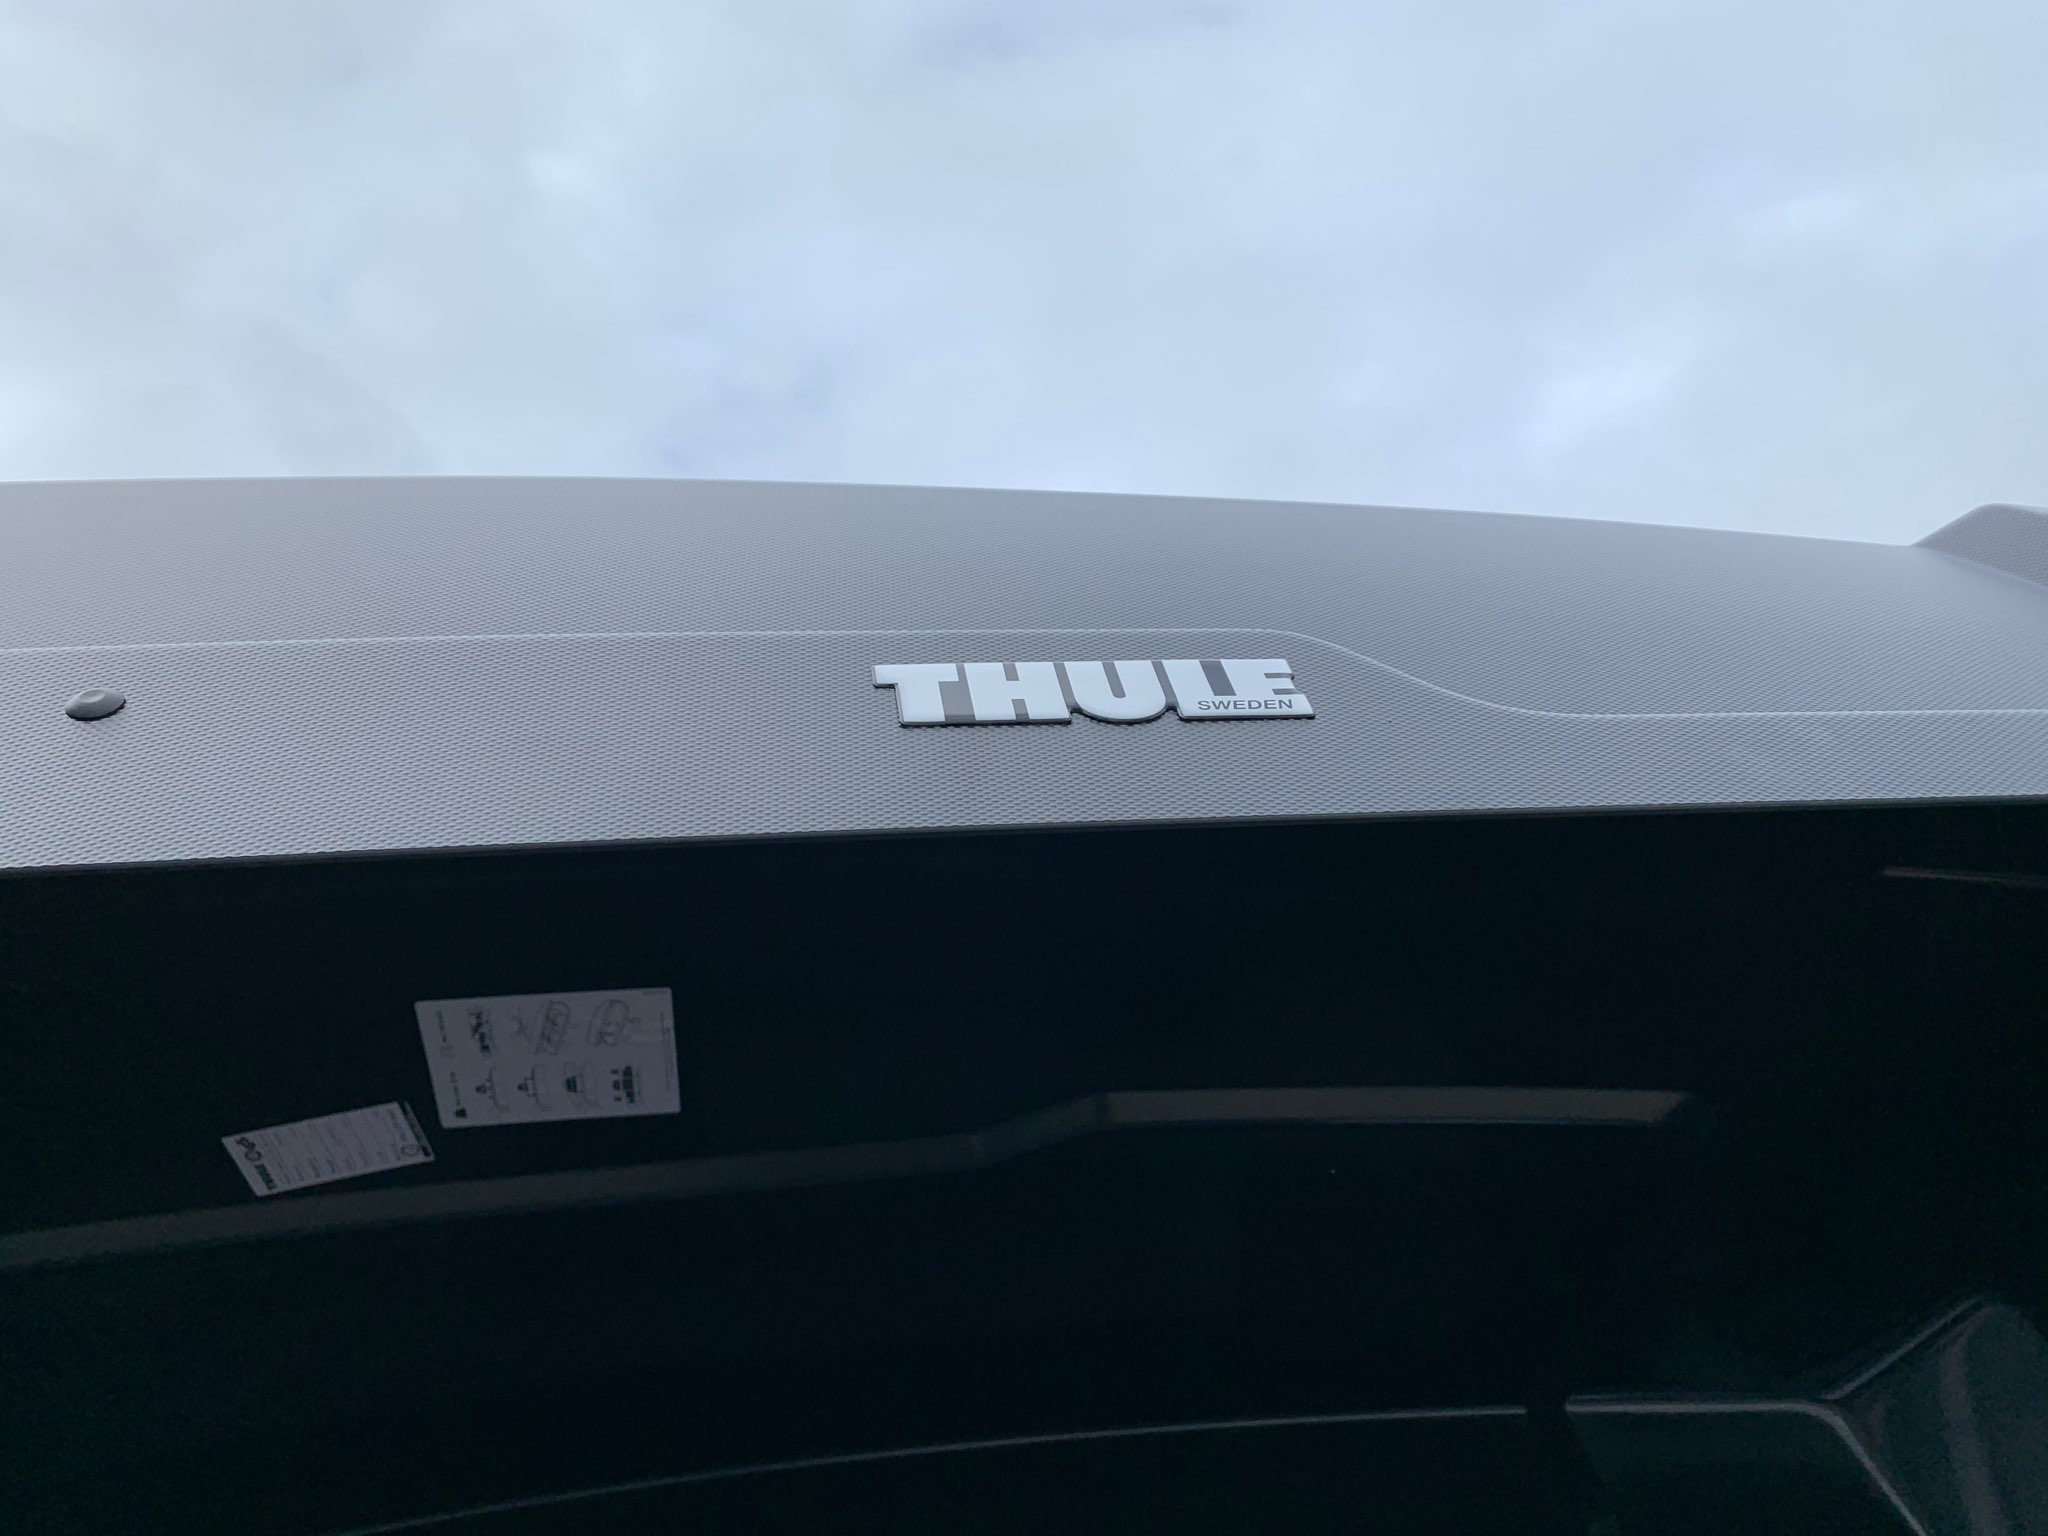 Montáž střešního boxu Thule Force XT XL na vozidlo zákazníka, skvělý design a aerodynamický tvar